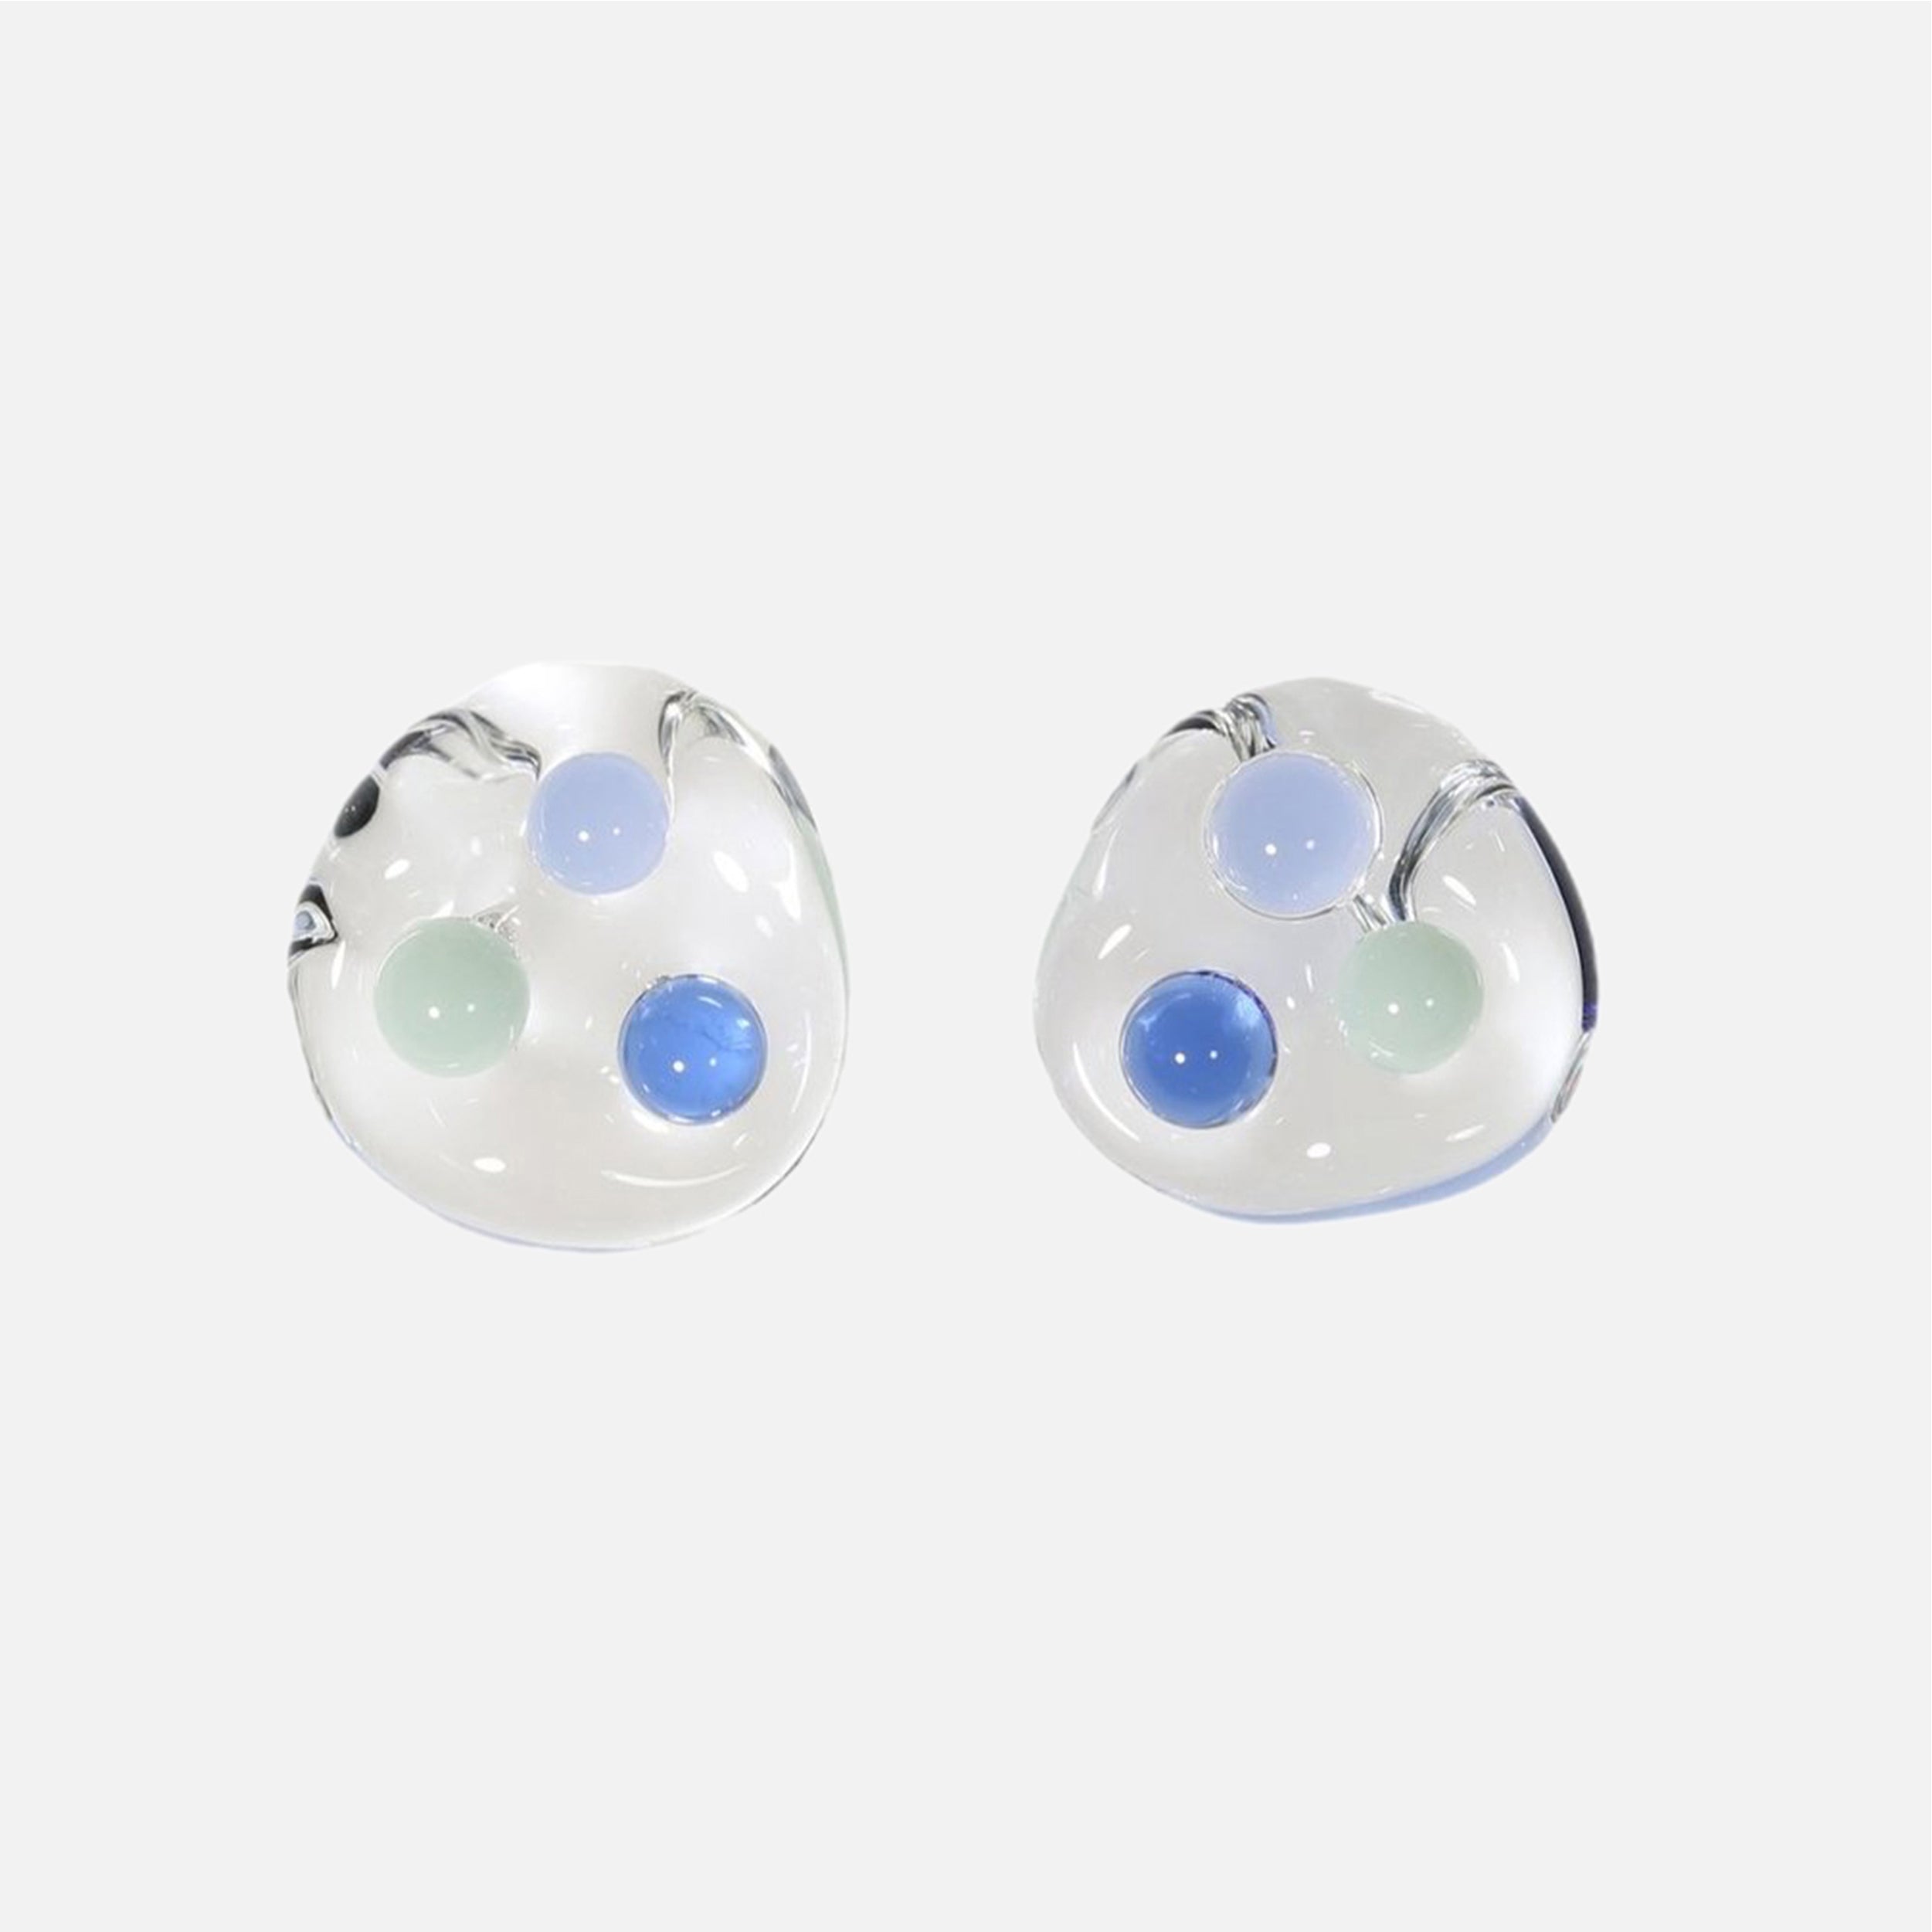 Three Sphere Earrings